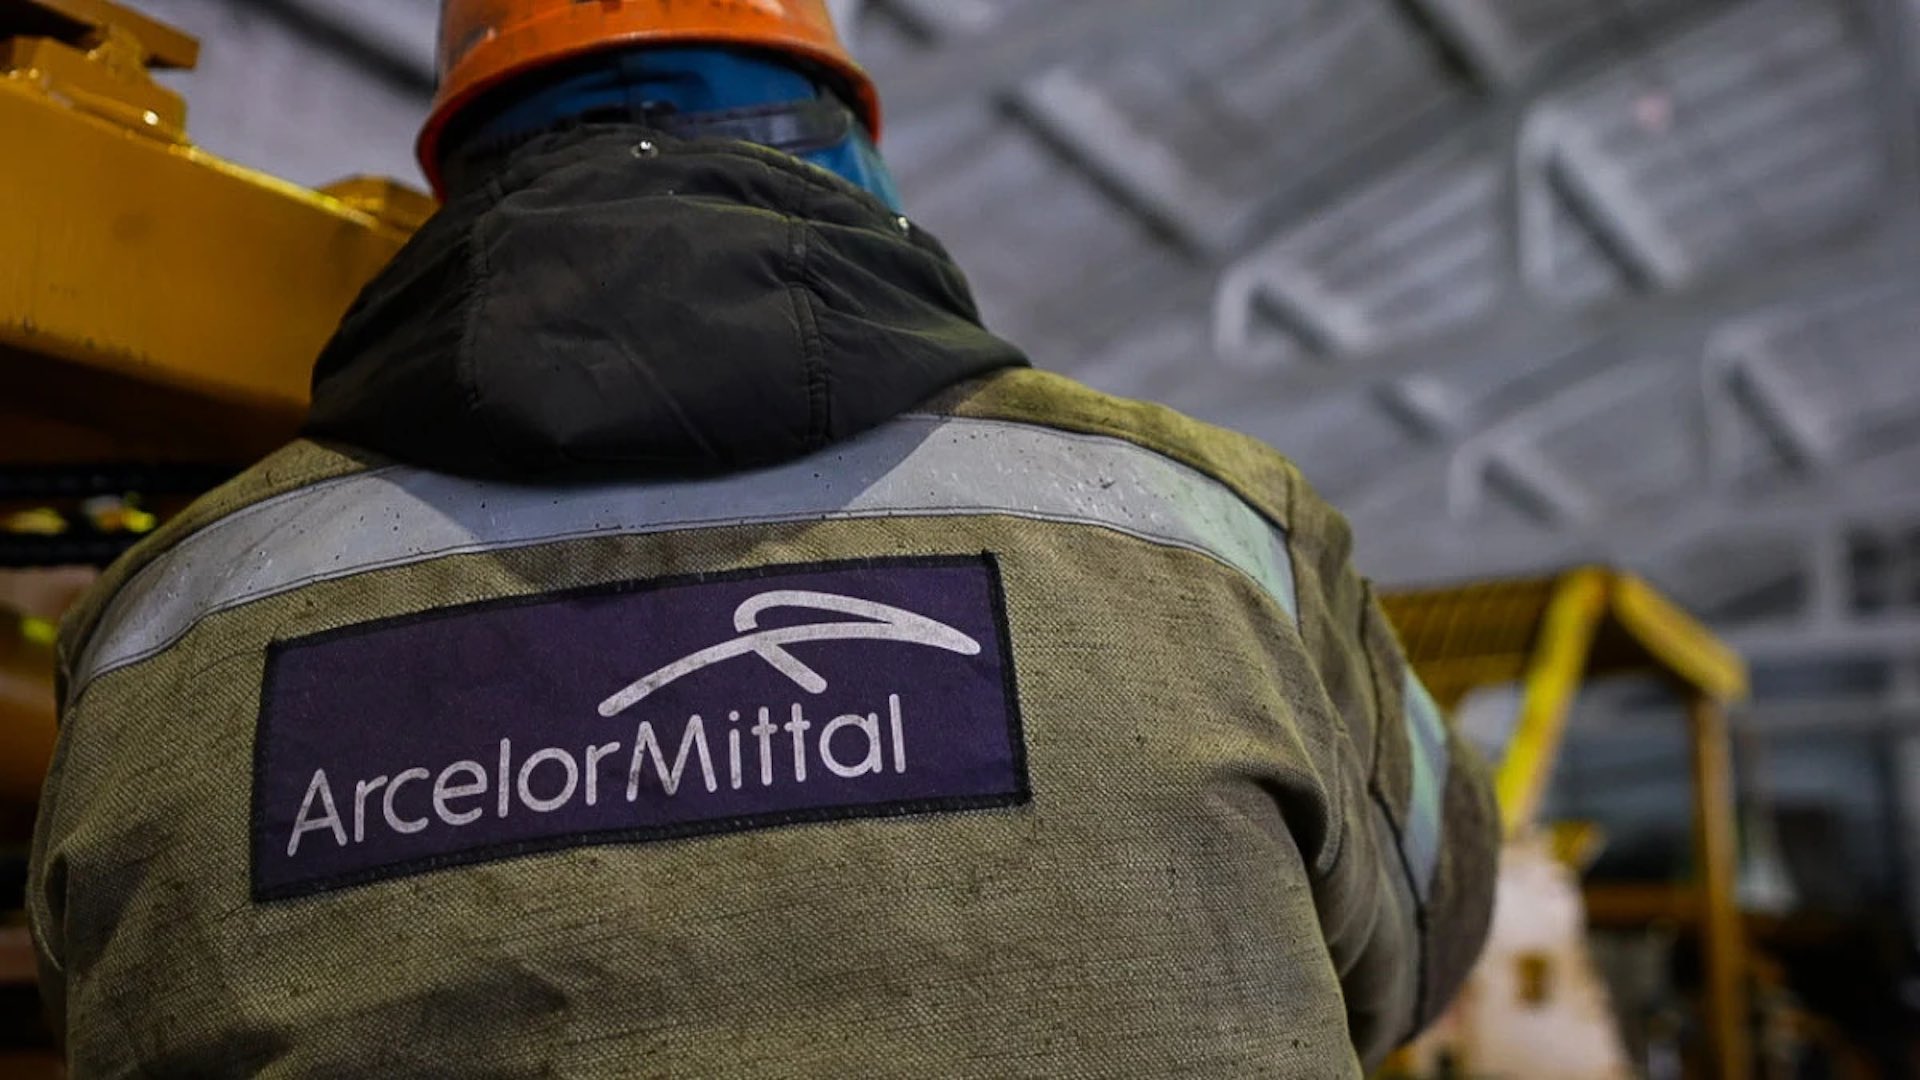 Из госбюджета не потрачено ни 1 тенге: РК успешно завершила переговоры с ArcelorMittal